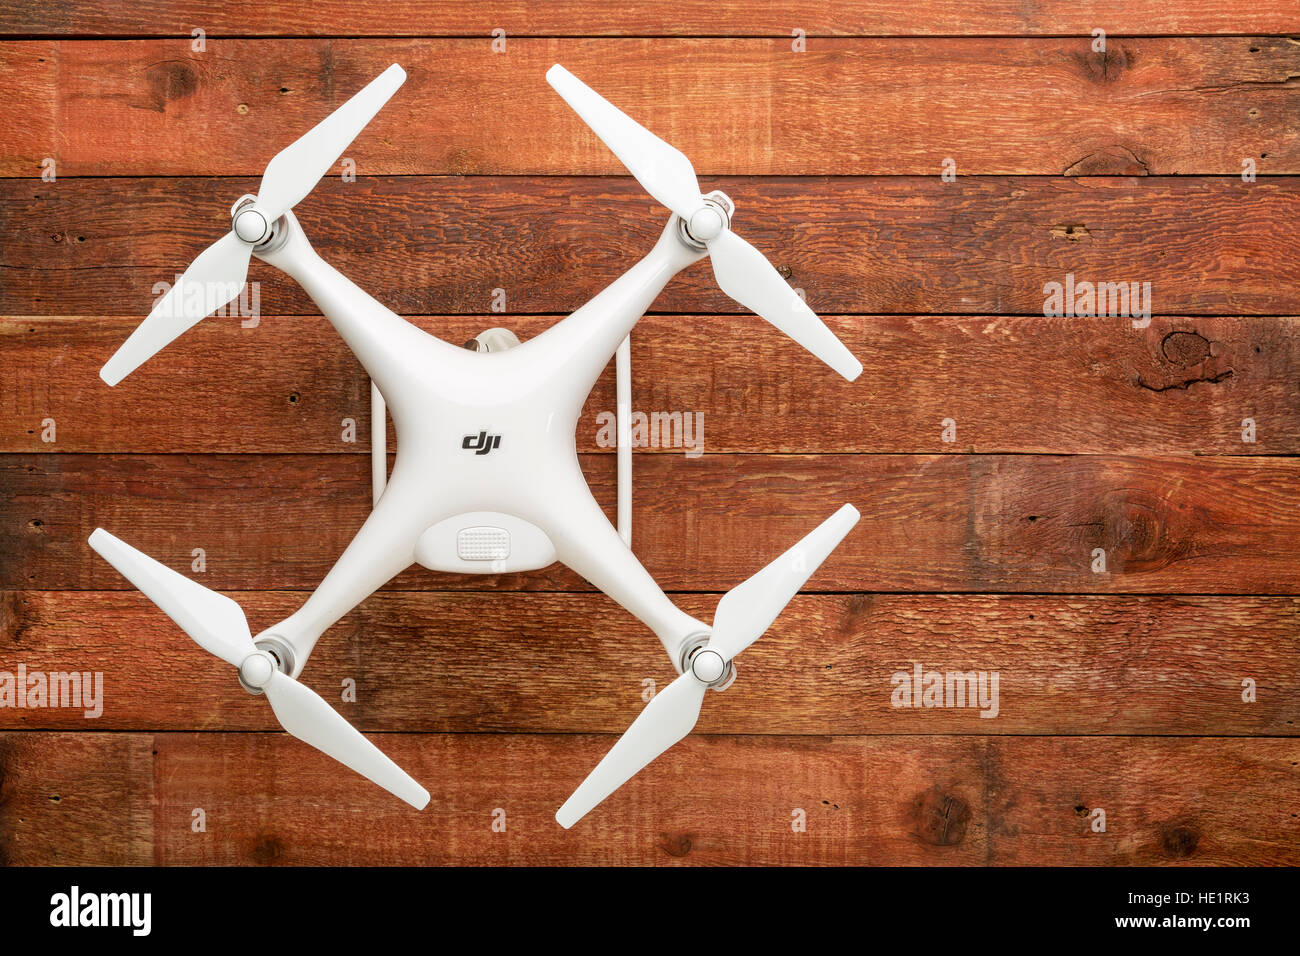 DJI Phantom 4 pro quadcopter drone su una tavola in legno rustico con una copia dello spazio. Foto Stock